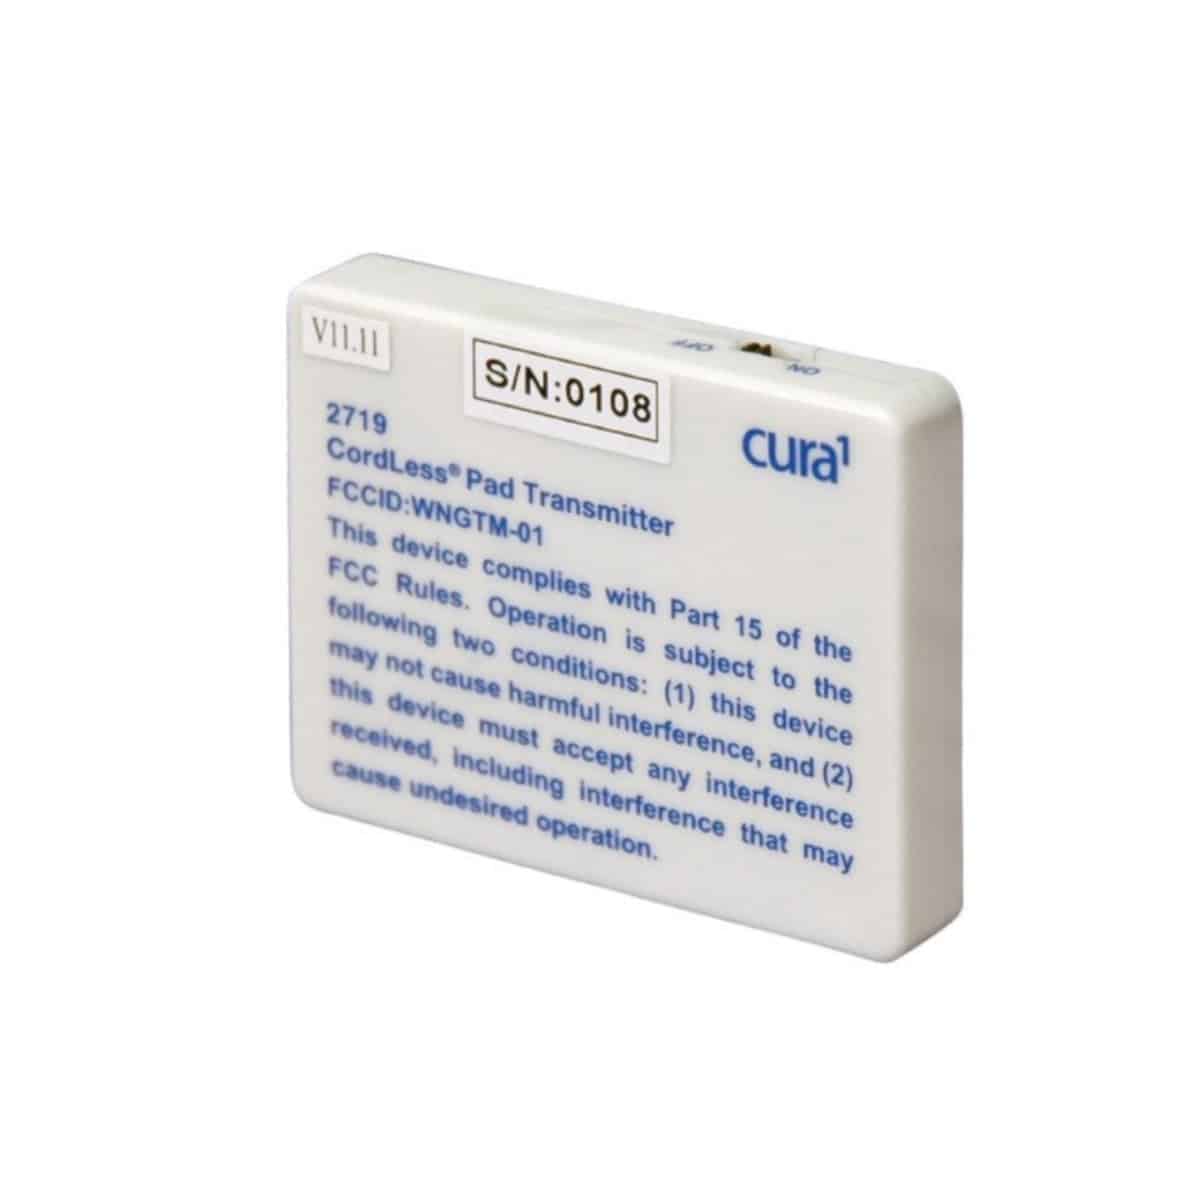 Cura1 Cordless Pad Transmitter